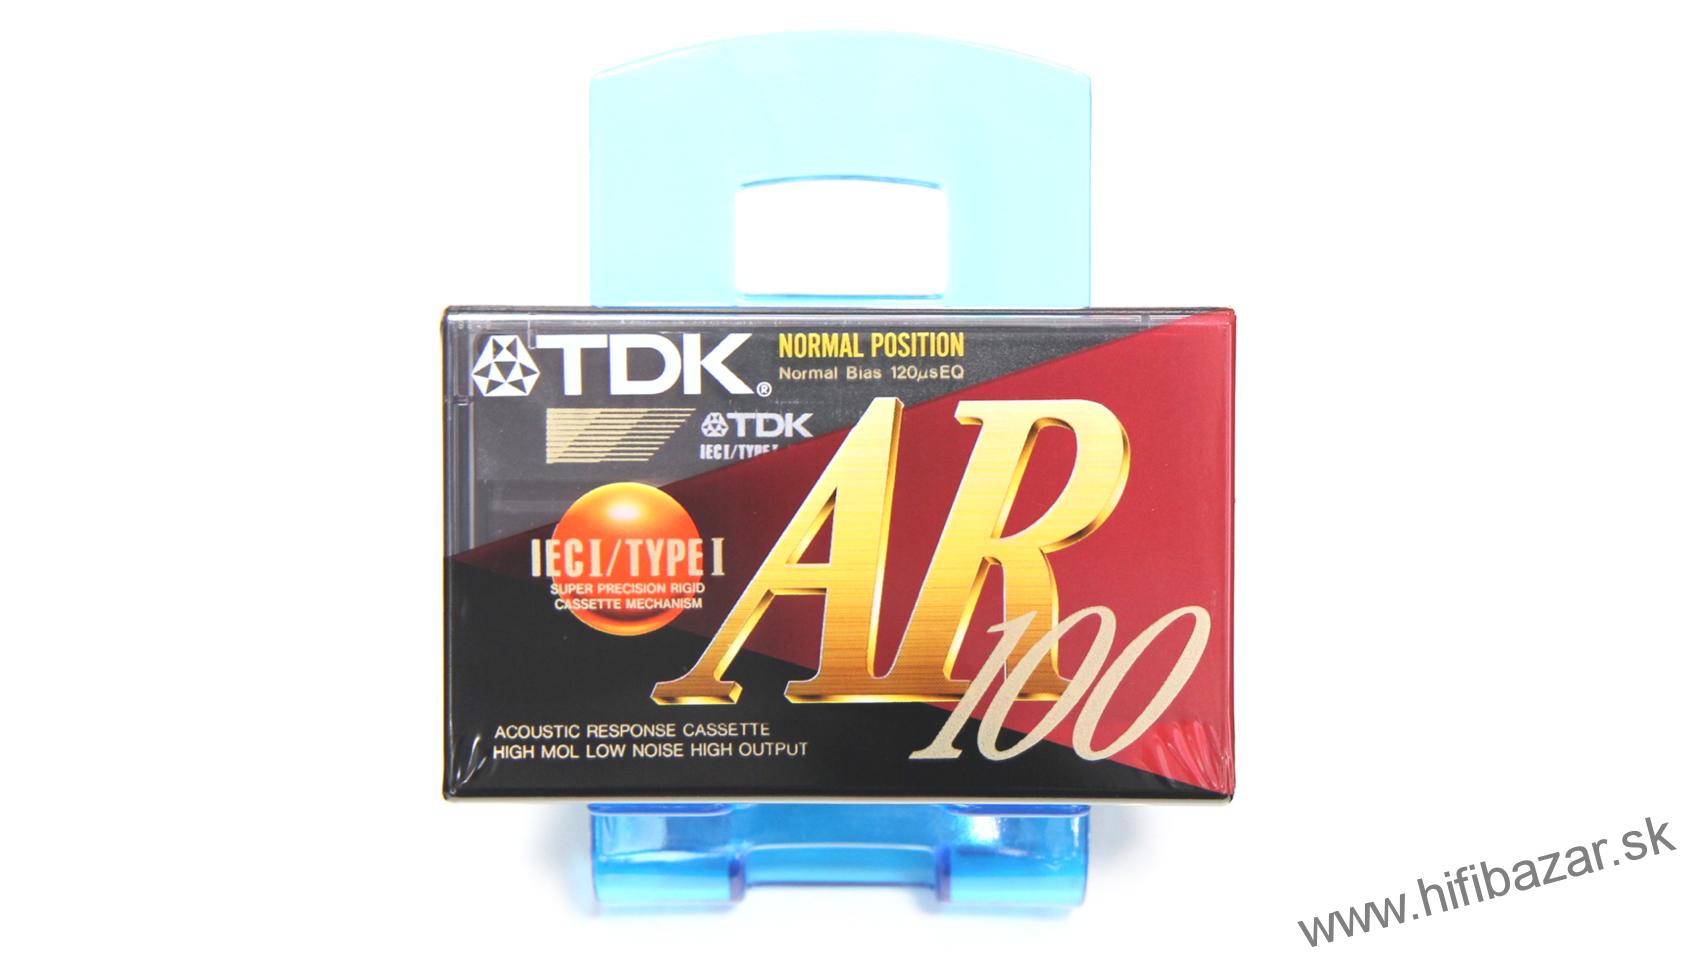 TDK AR-100 Acoustic Response